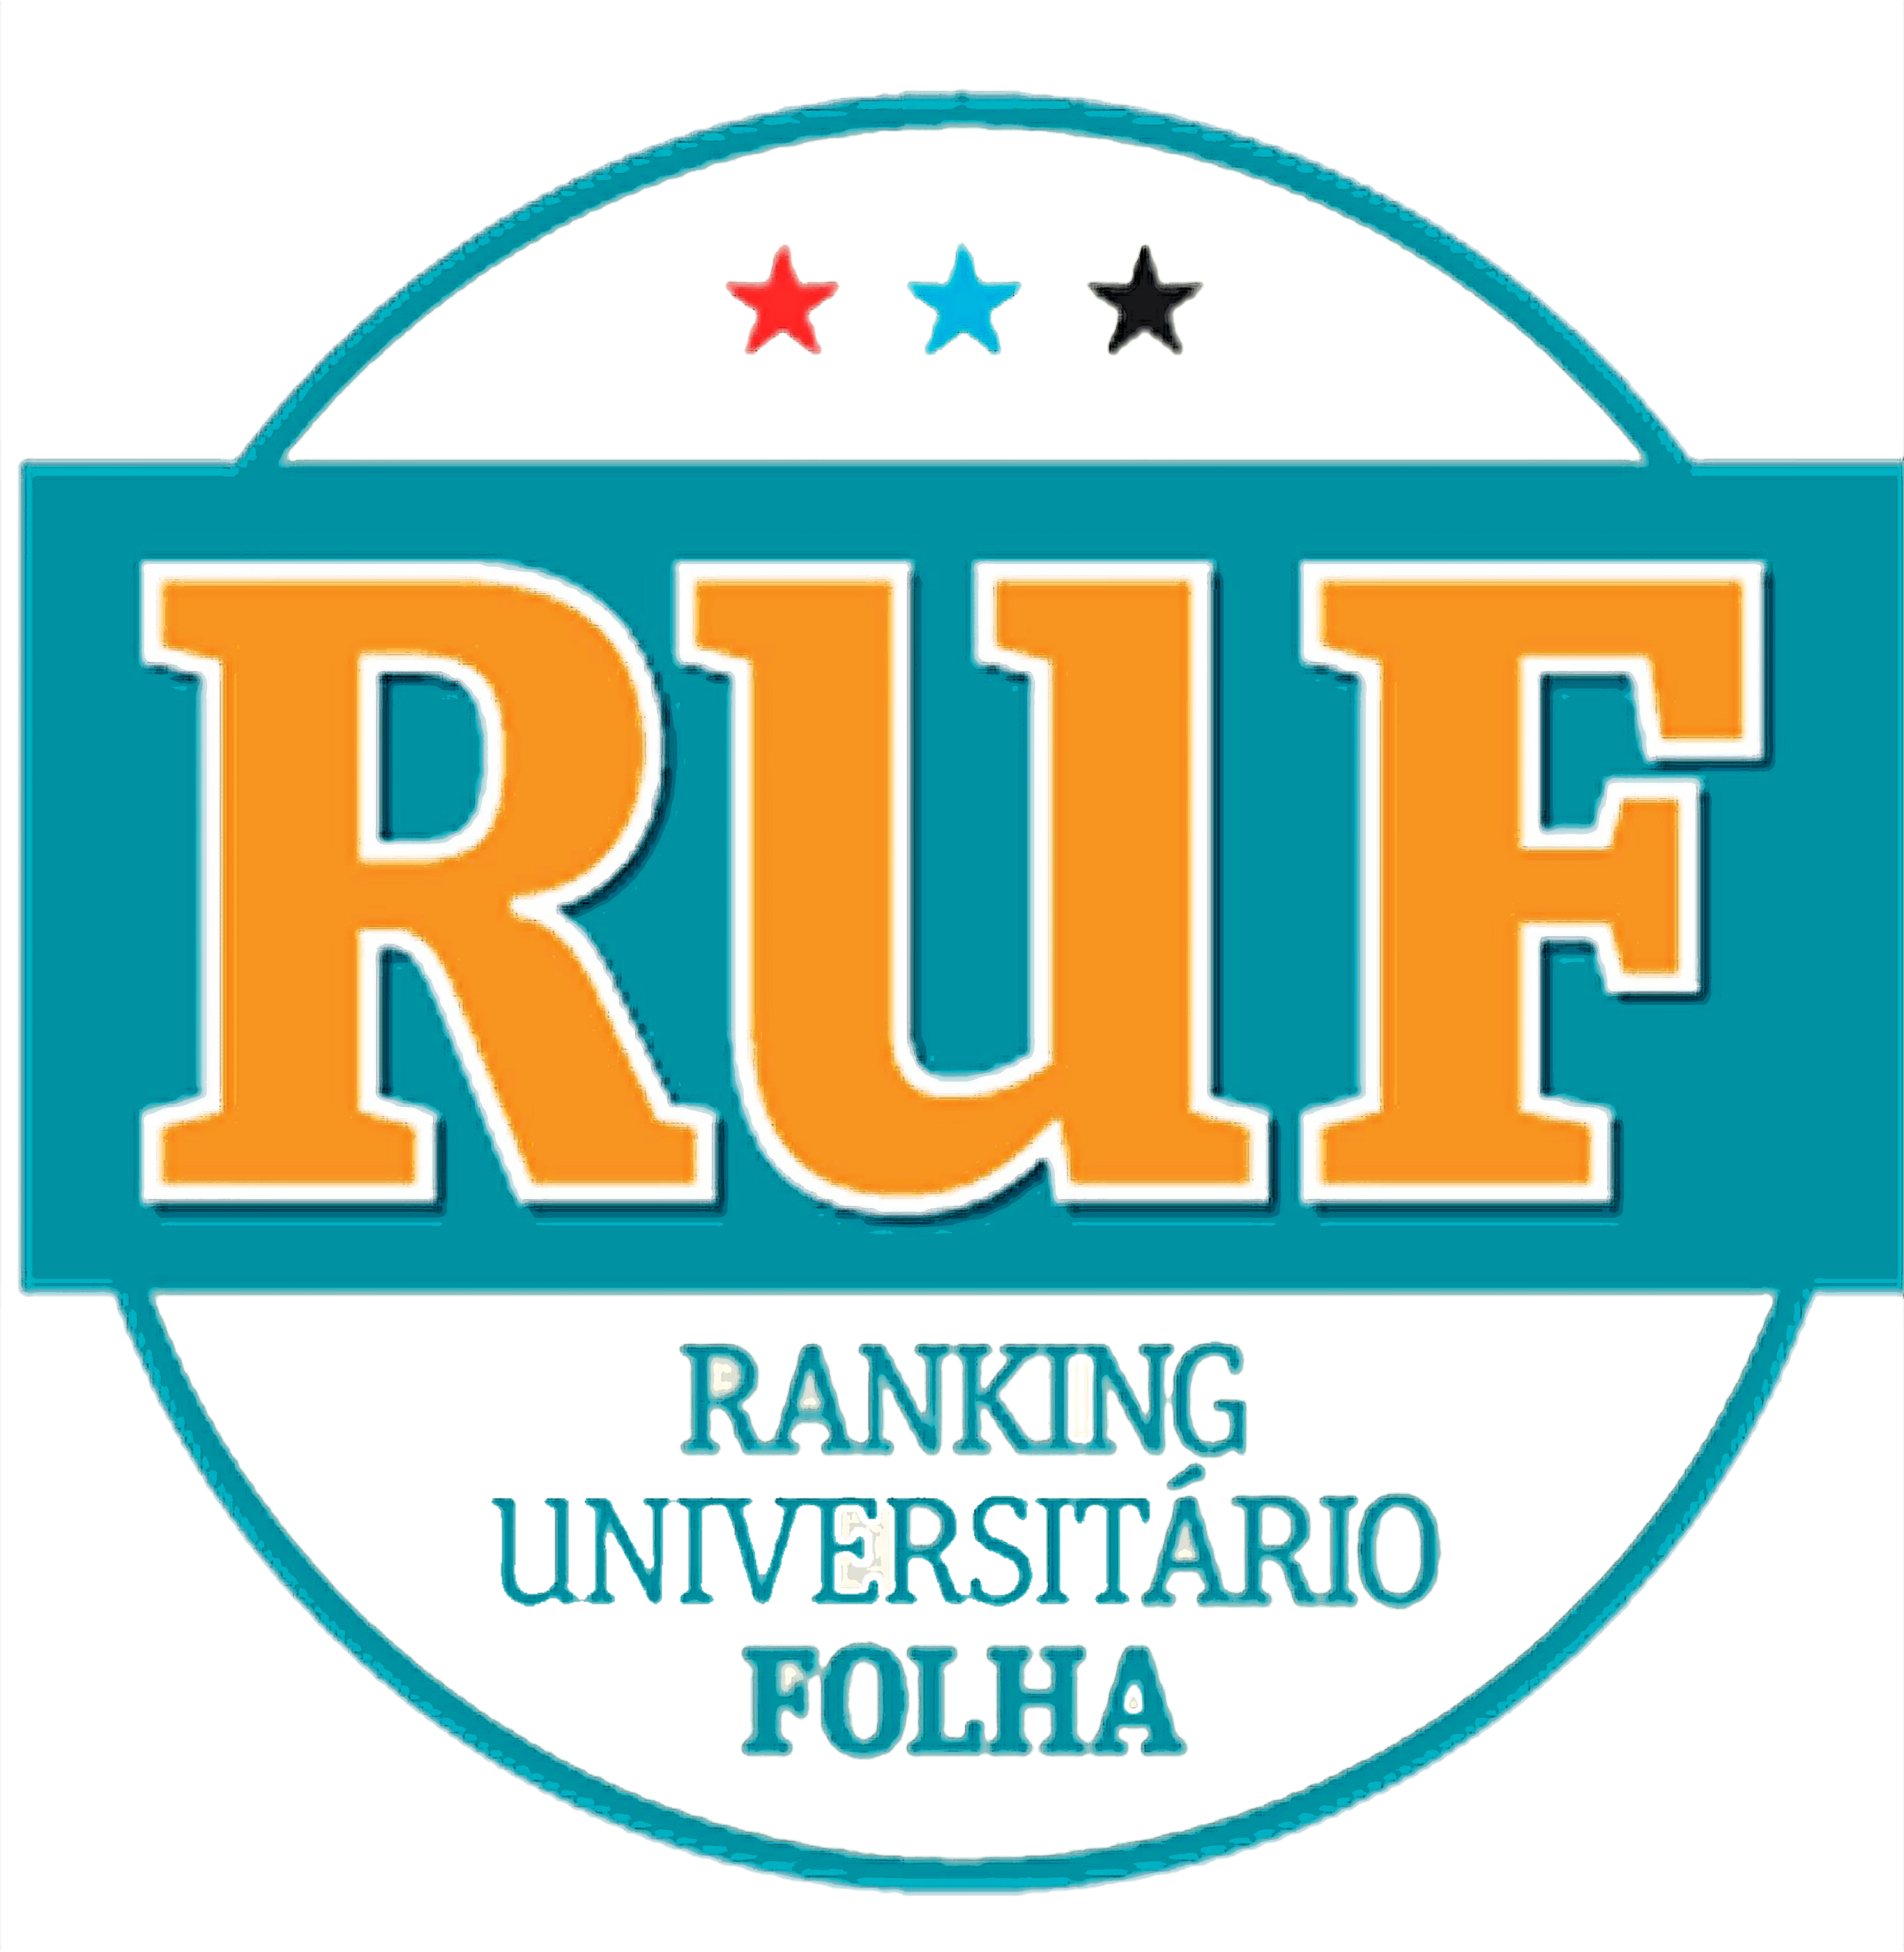 Ranking Universitário Folha aponta qualidade de cursos da Educação Metodista